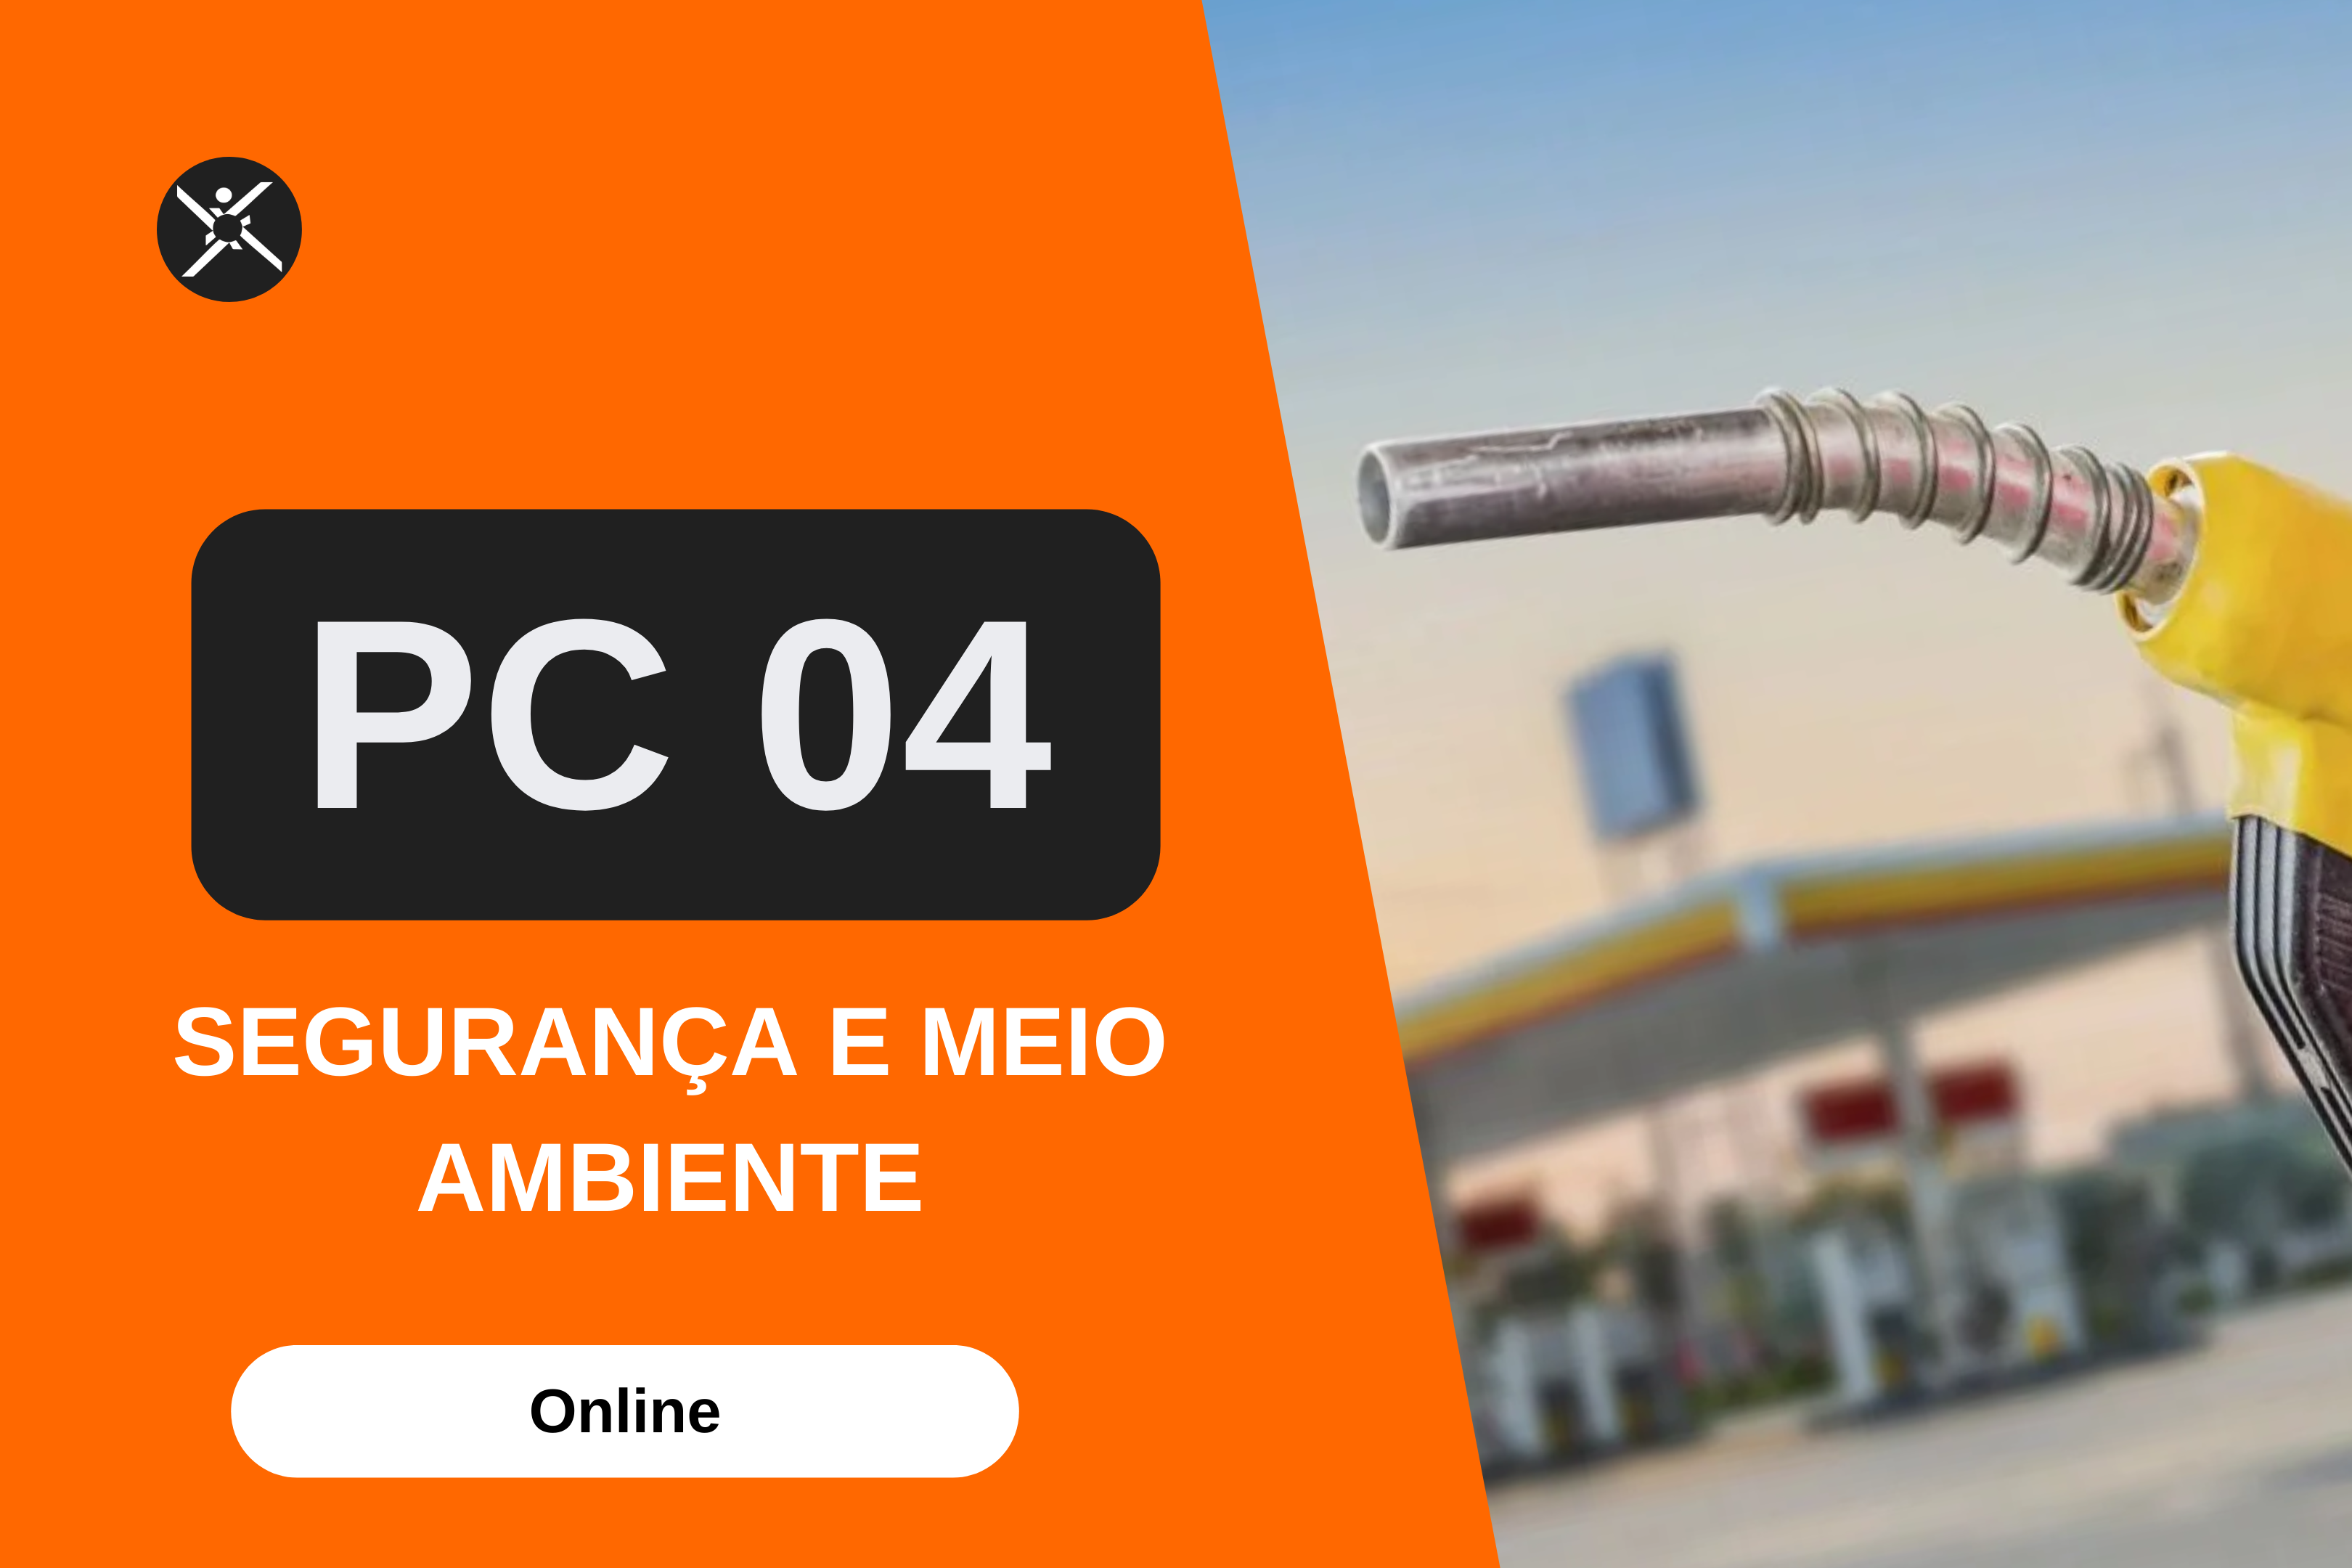 PC 04 - SEGURANÇA E MEIO AMBIENTE - POSTOS DE COMBUSTÍVEIS